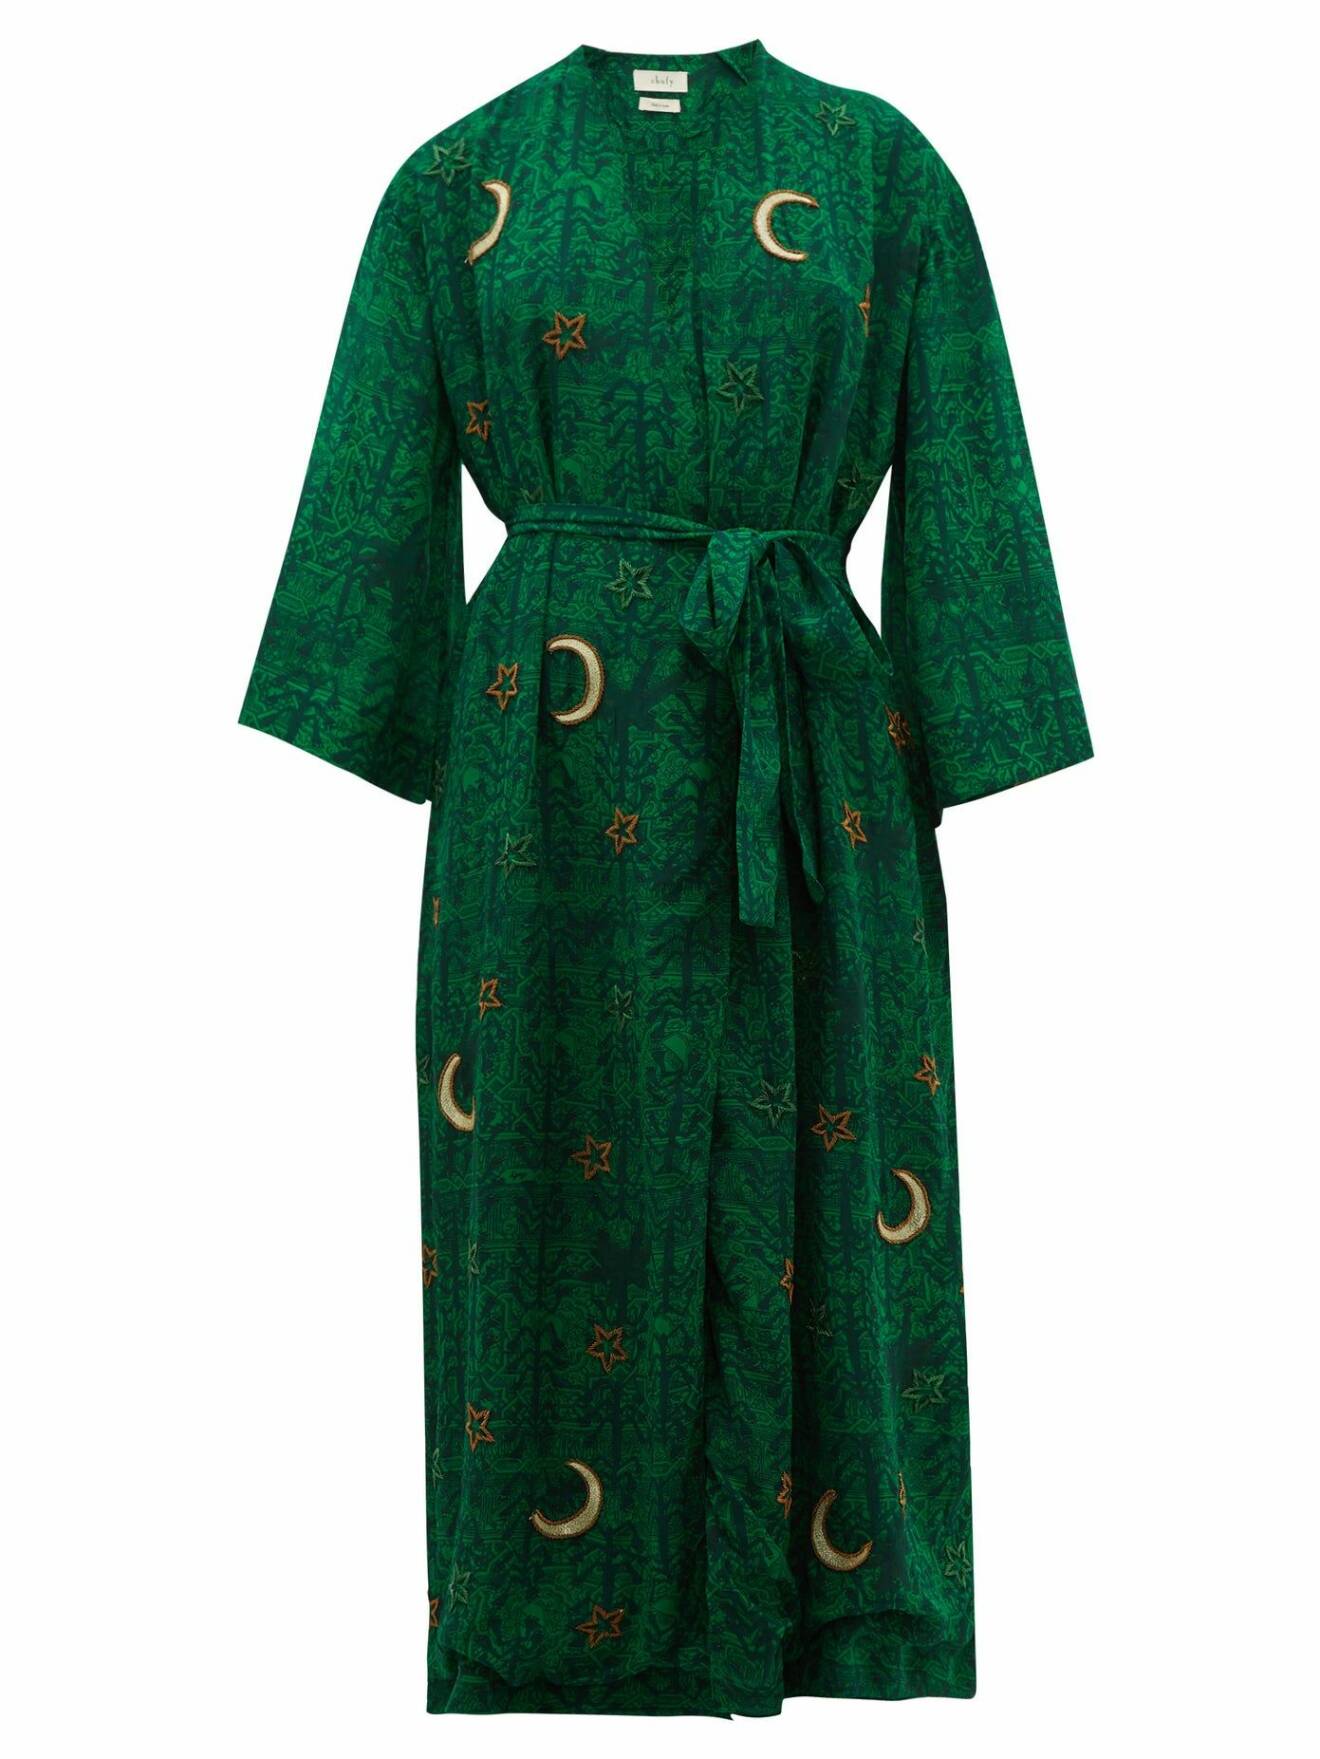 Mörkgrön elegant kaftan/morgonrock med astroinspirerade motiv av stjärnor och månar.